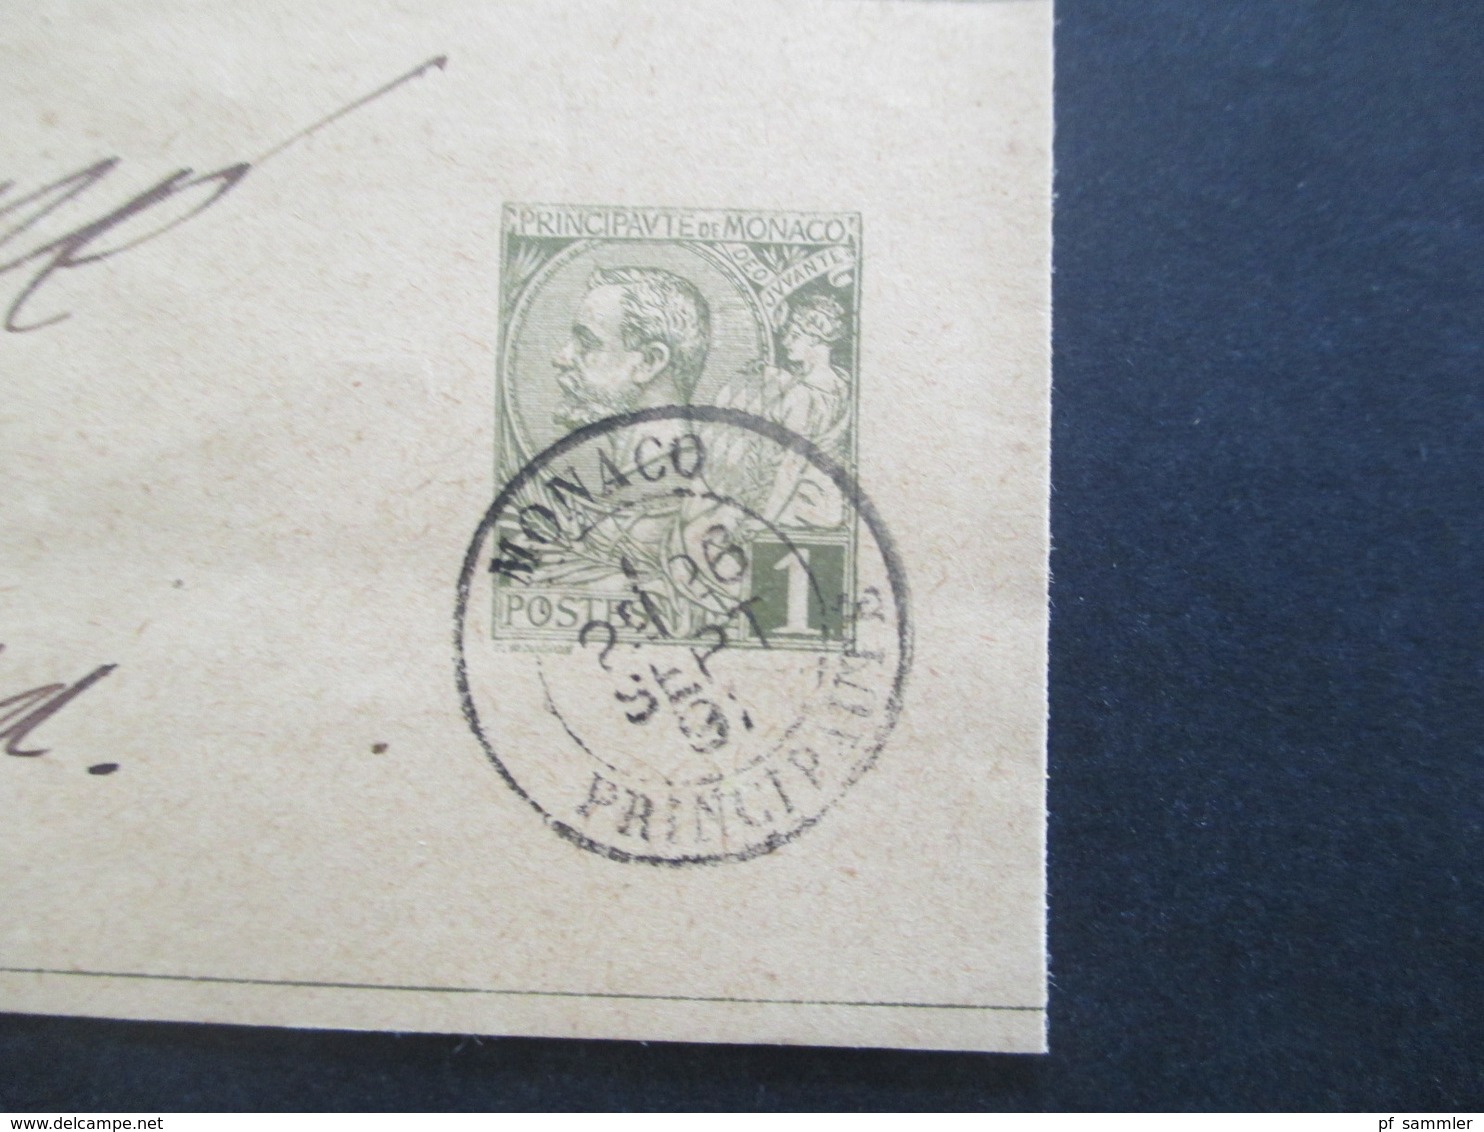 Monaco ca. 1891 -1905 Postkarten / 1x Umschlag mit Aufdruck Taxe Reduite / Carte Lettre und 1x Streifband insgesamt 6 St